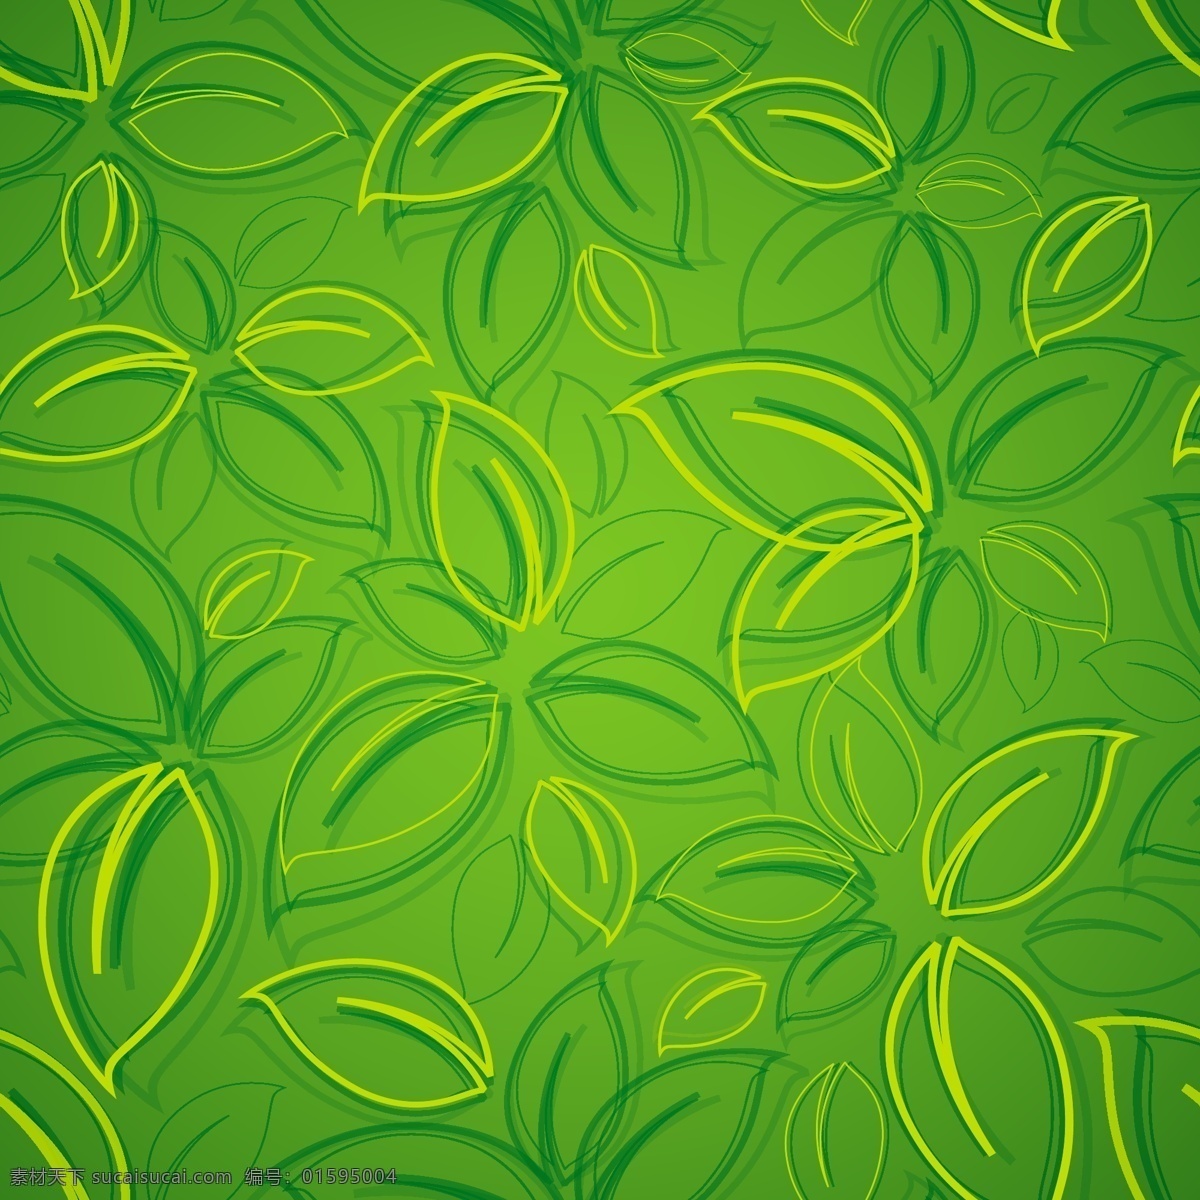 绿色树叶背景 绿色 树叶 背景图案 背景模板 植物背景 底纹背景 底纹边框 矢量素材